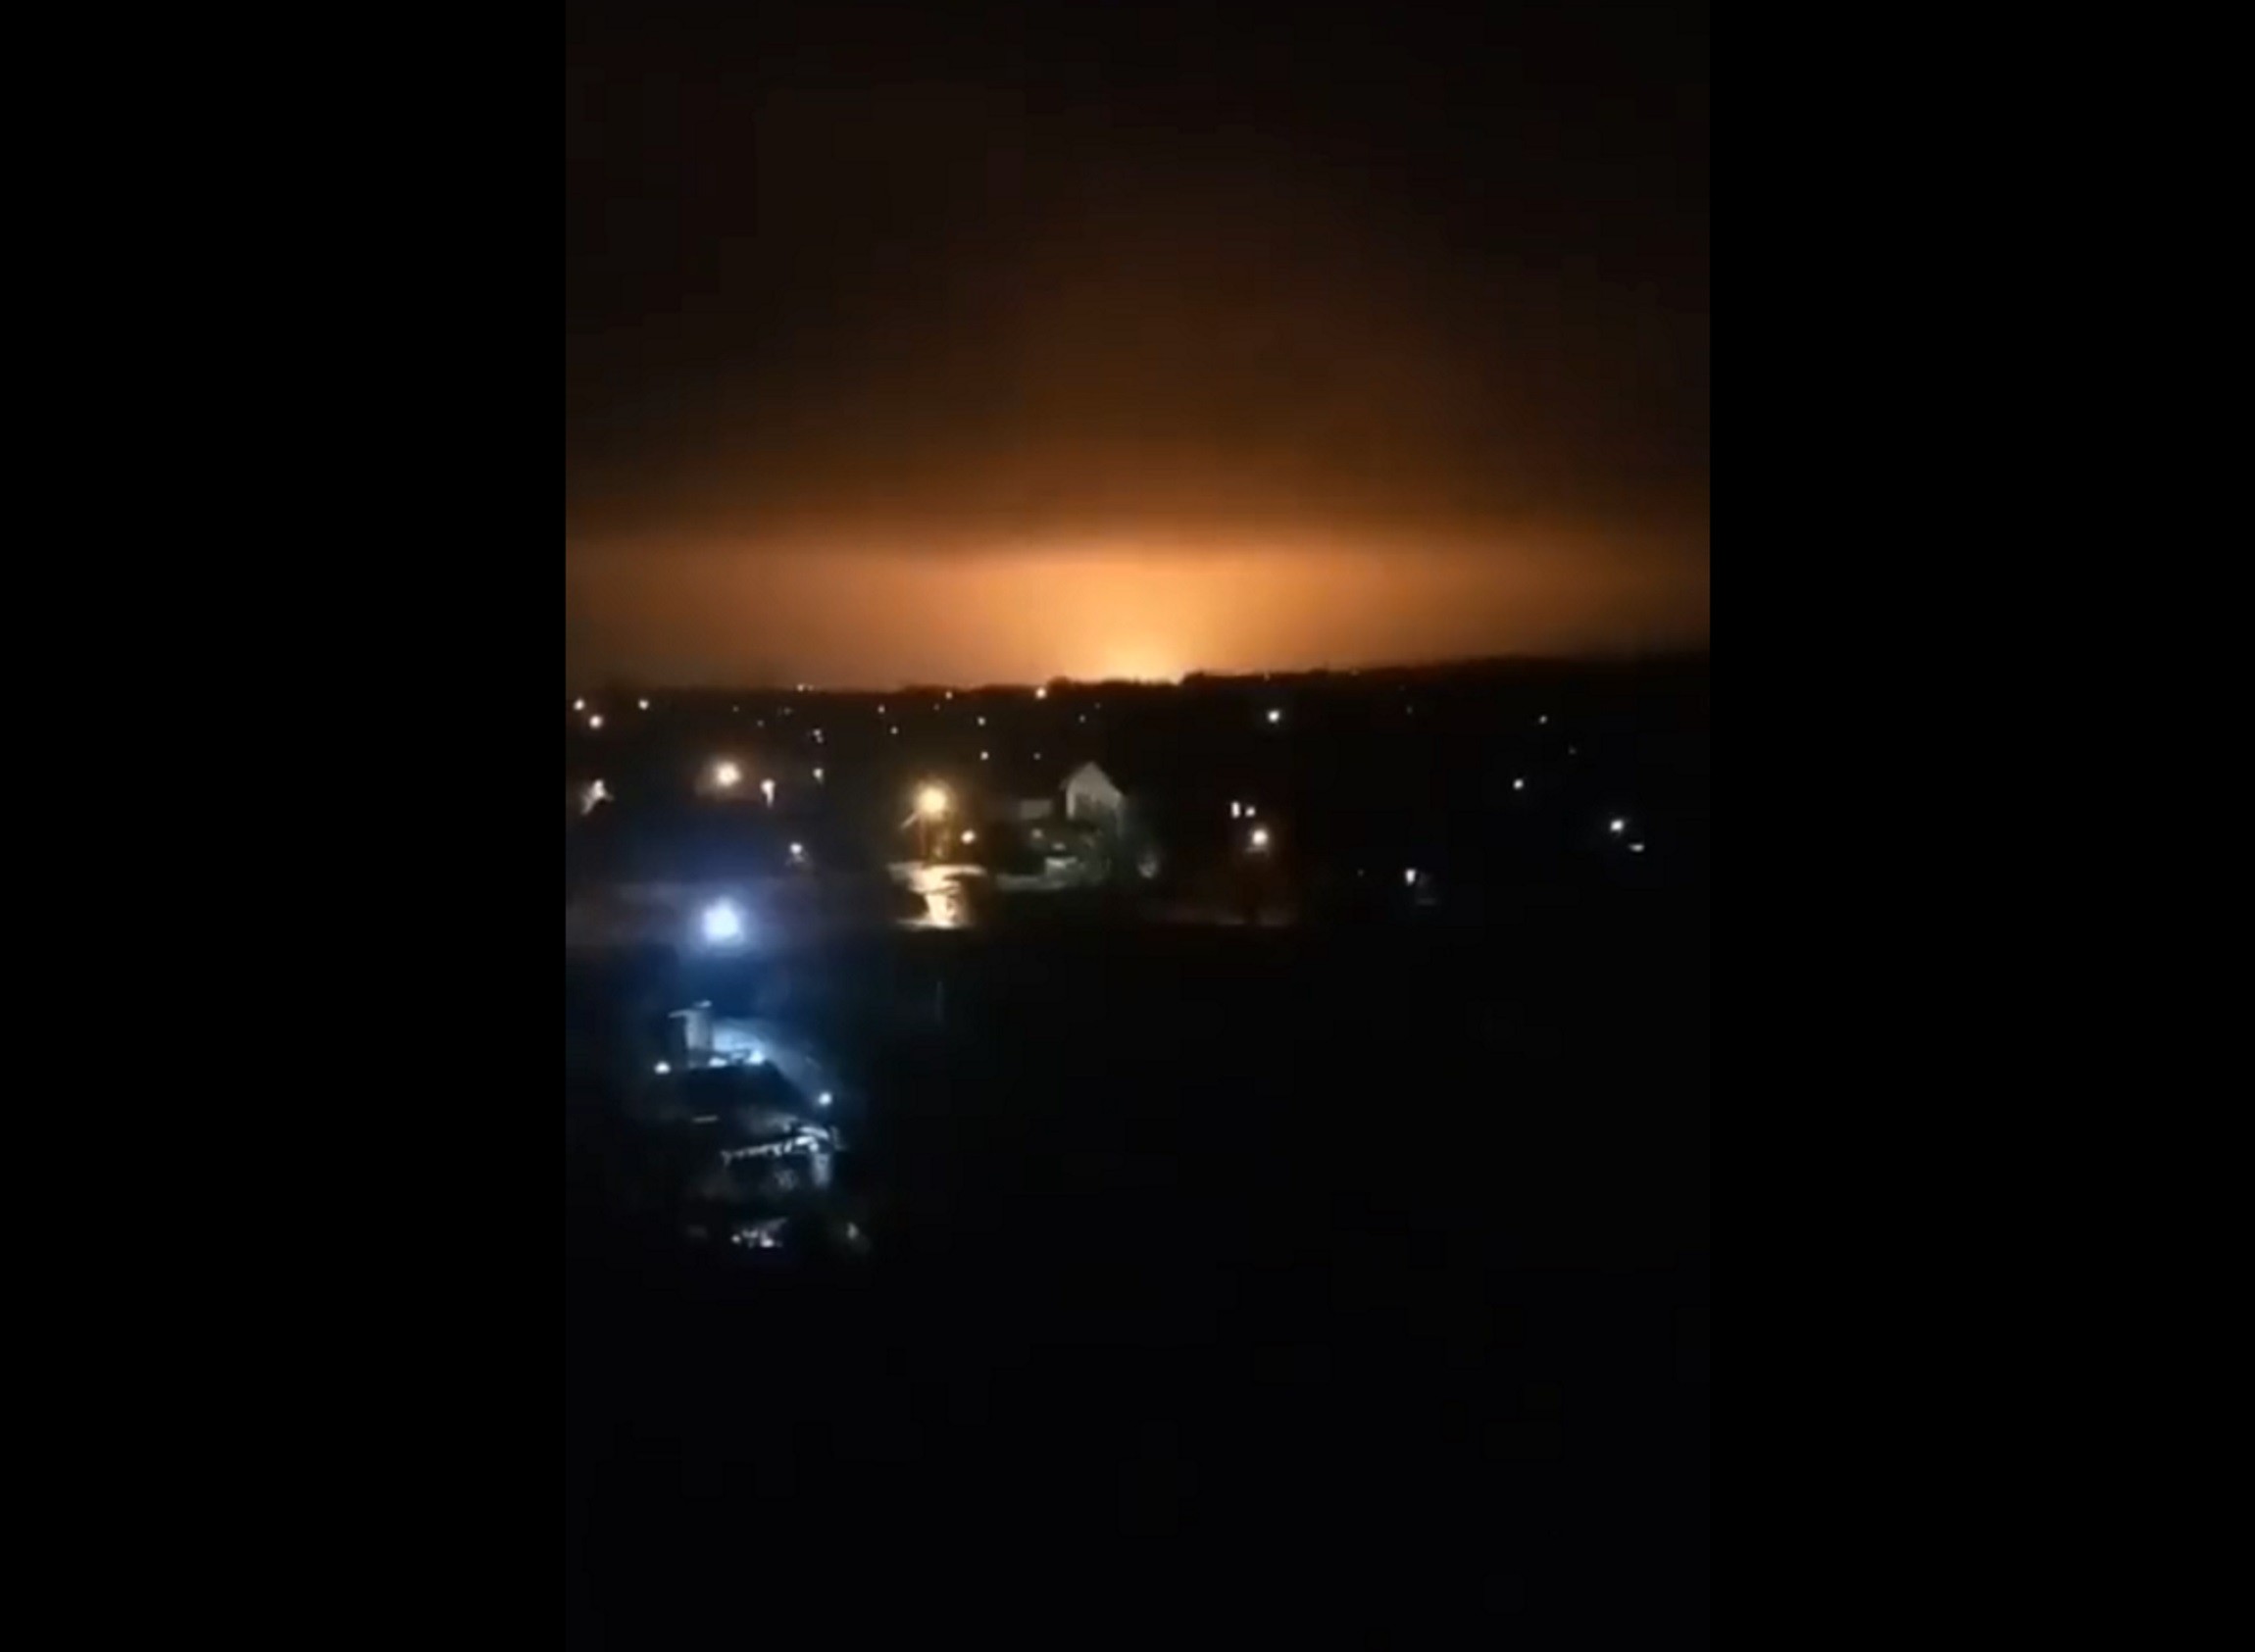 Η στιγμή έκρηξης κοντά σε αγωγό στο Λουγκάσνκ το βράδυ της 18ης Φεβρουαρίου